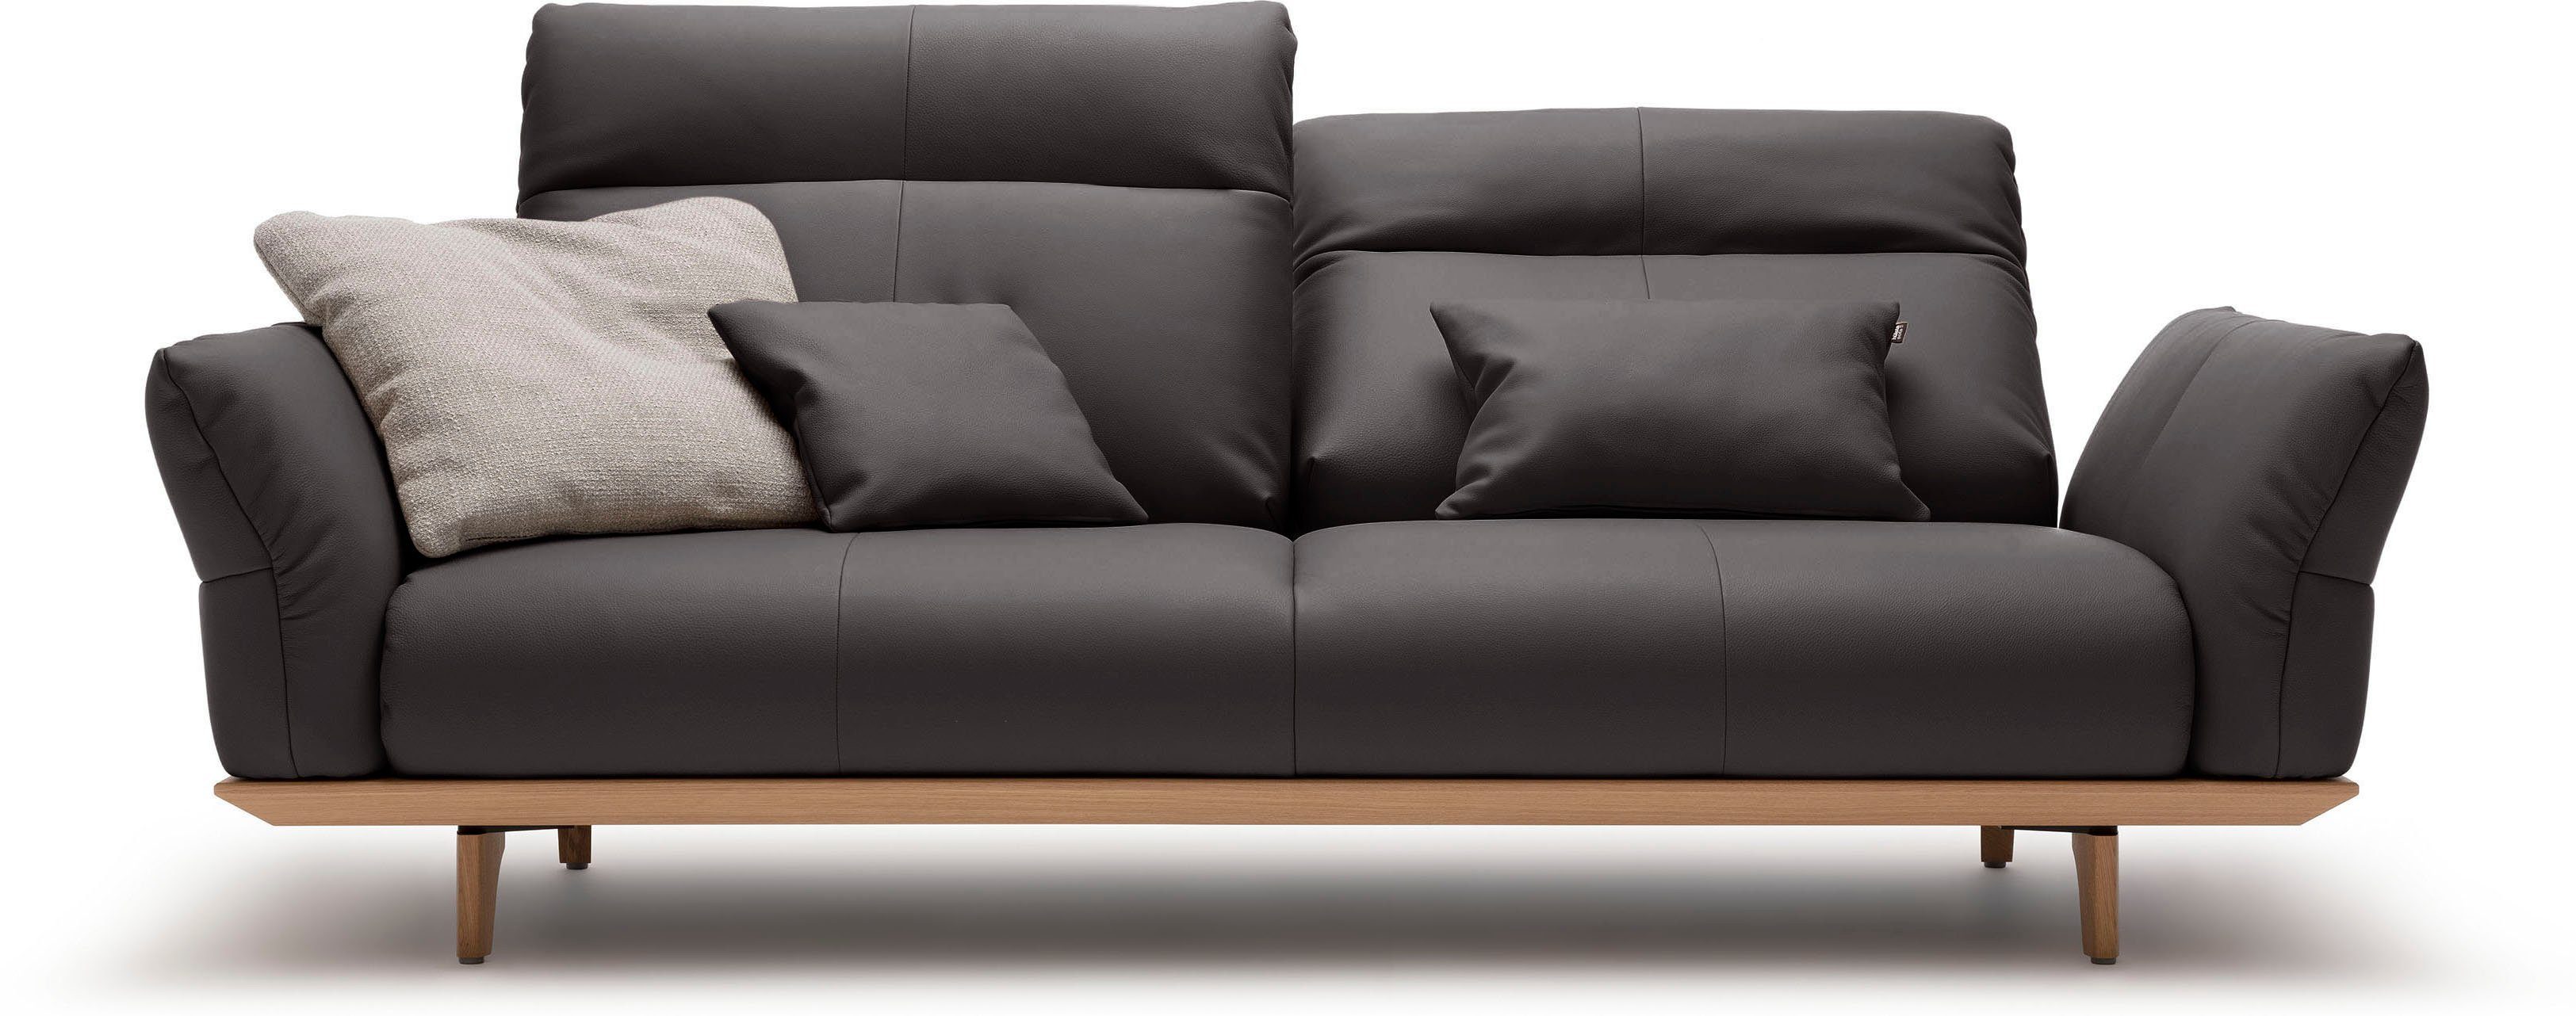 natur, sofa cm Füße Breite in 3-Sitzer Eiche, 208 hs.460, Eiche Sockel hülsta